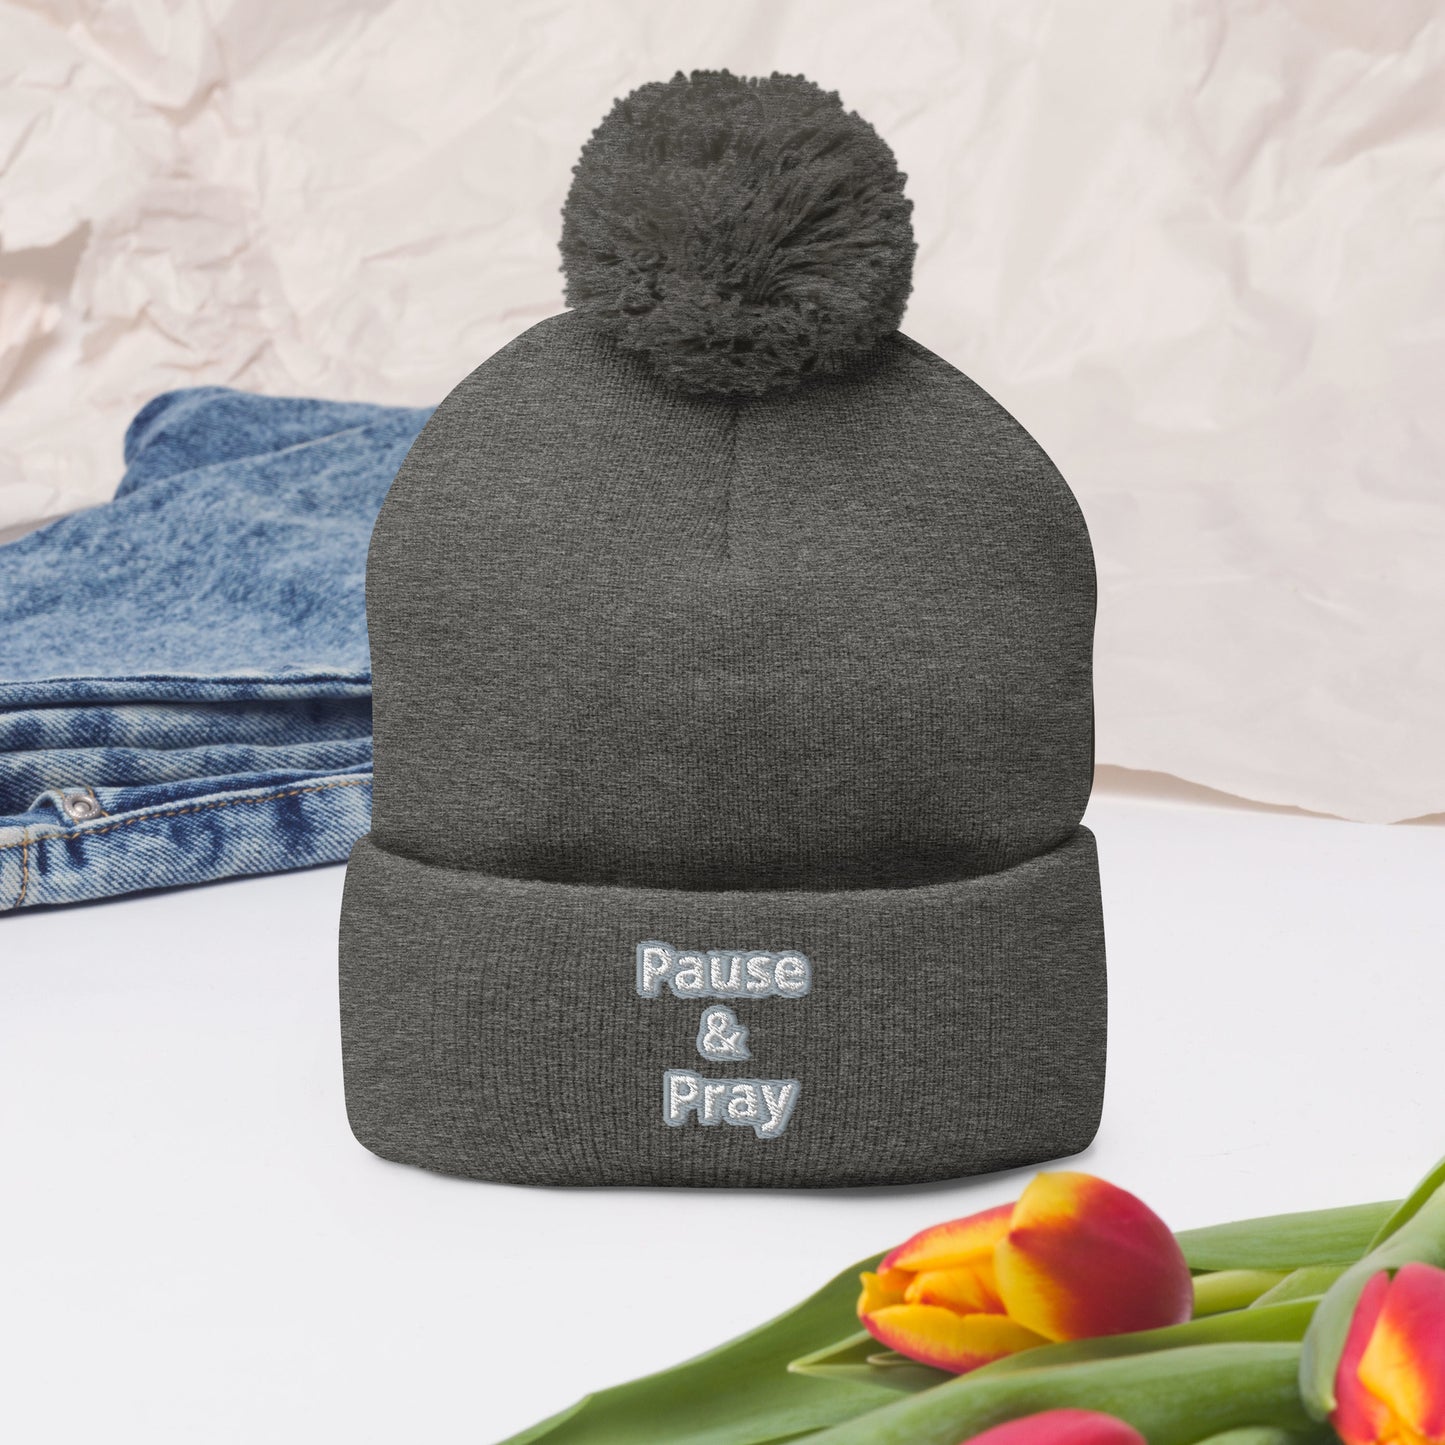 Pause & Pray Pom-Pom Beanie